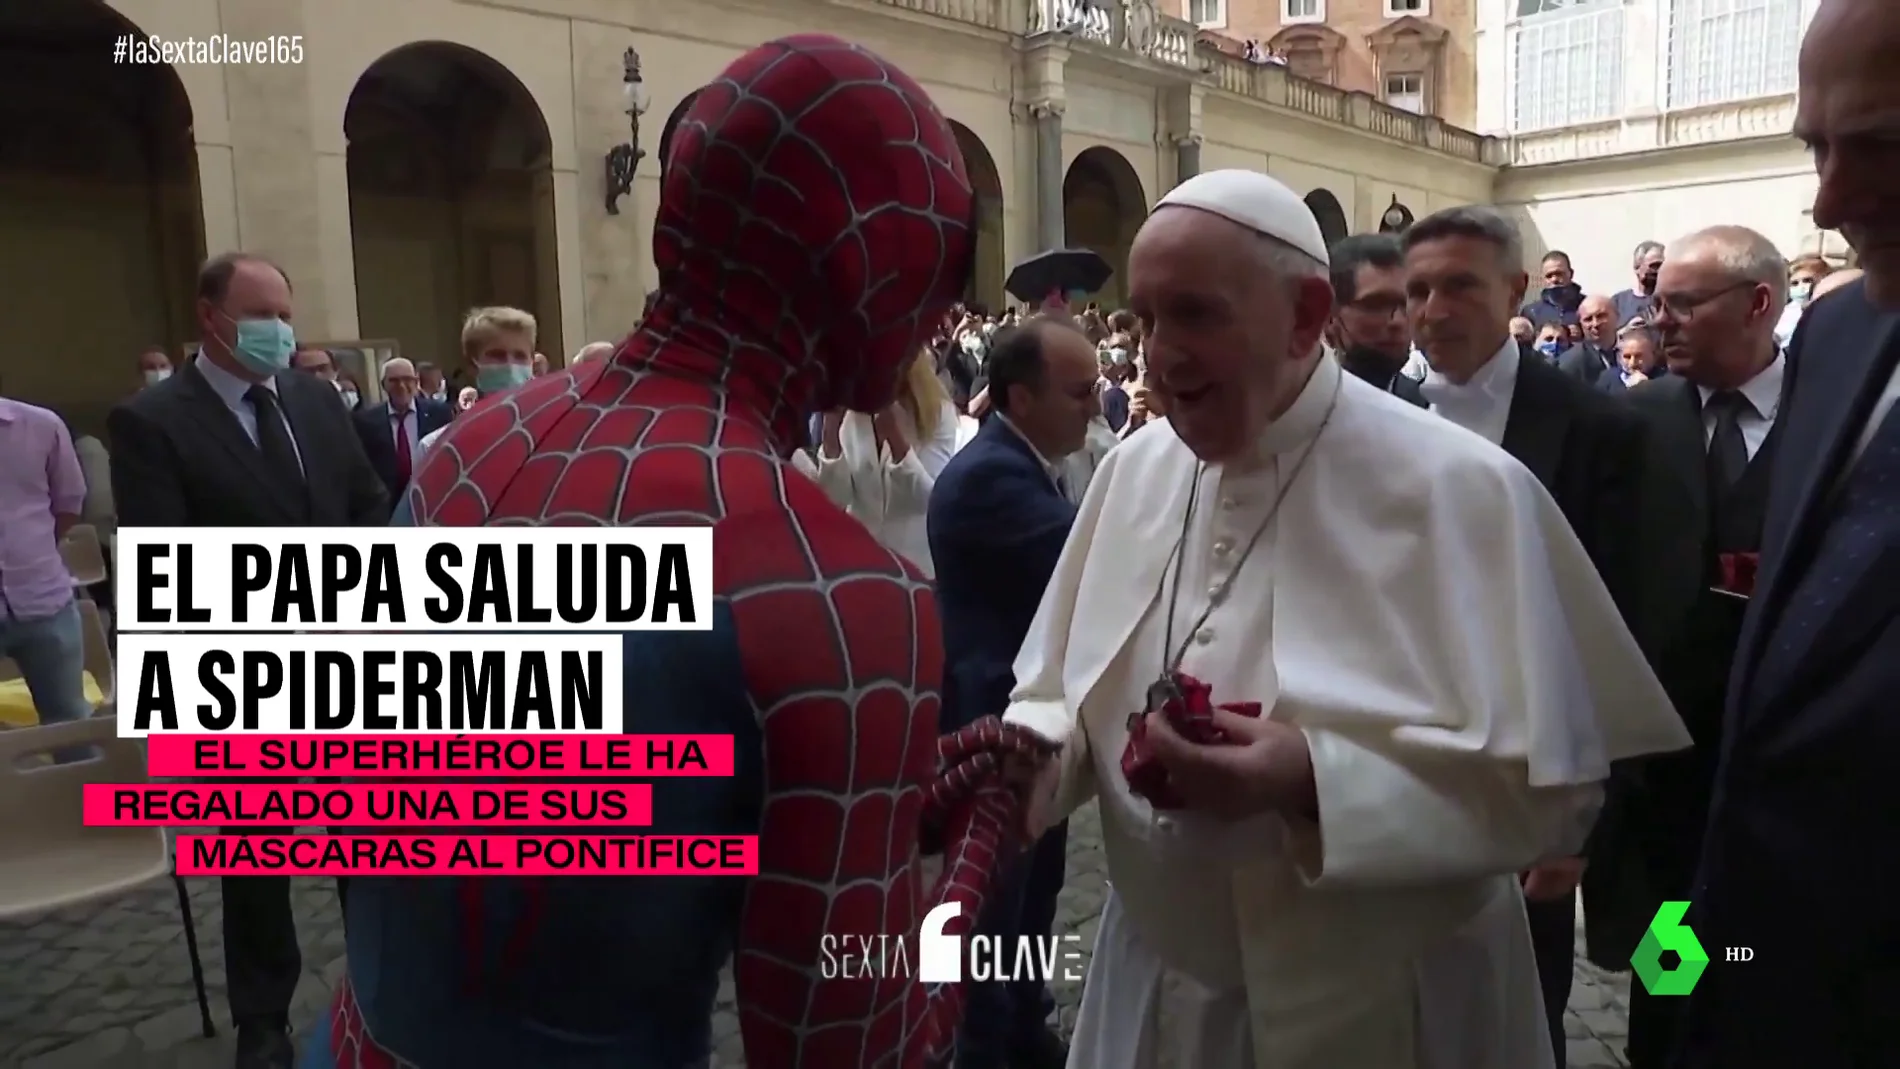 Qué hay tras la insólita imagen de Spiderman saludando al Papa Francisco